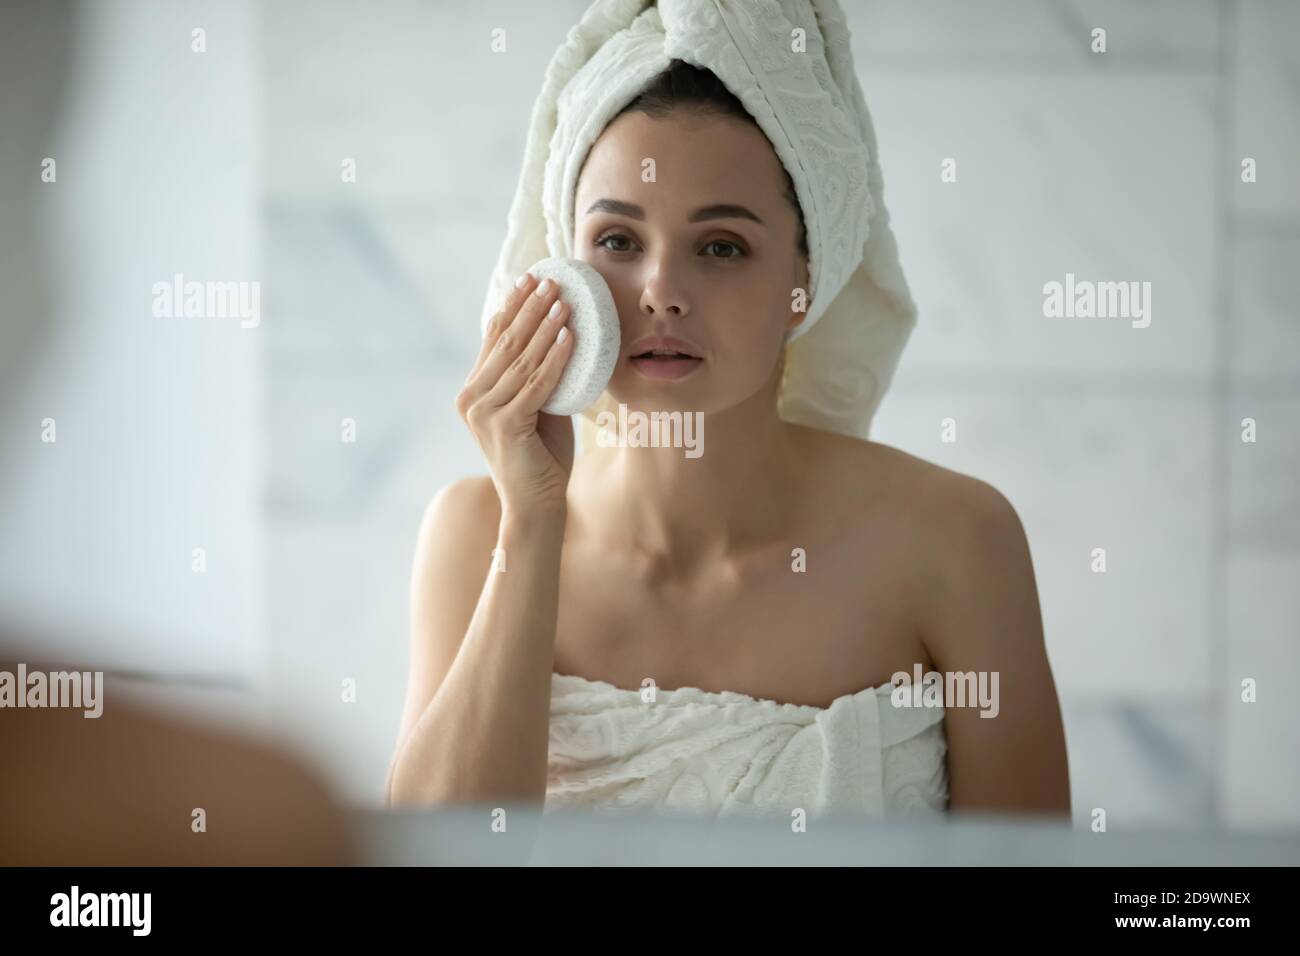 Jeune femme avec une peau délicate sensible essayant une nouvelle éponge pour le visage Banque D'Images